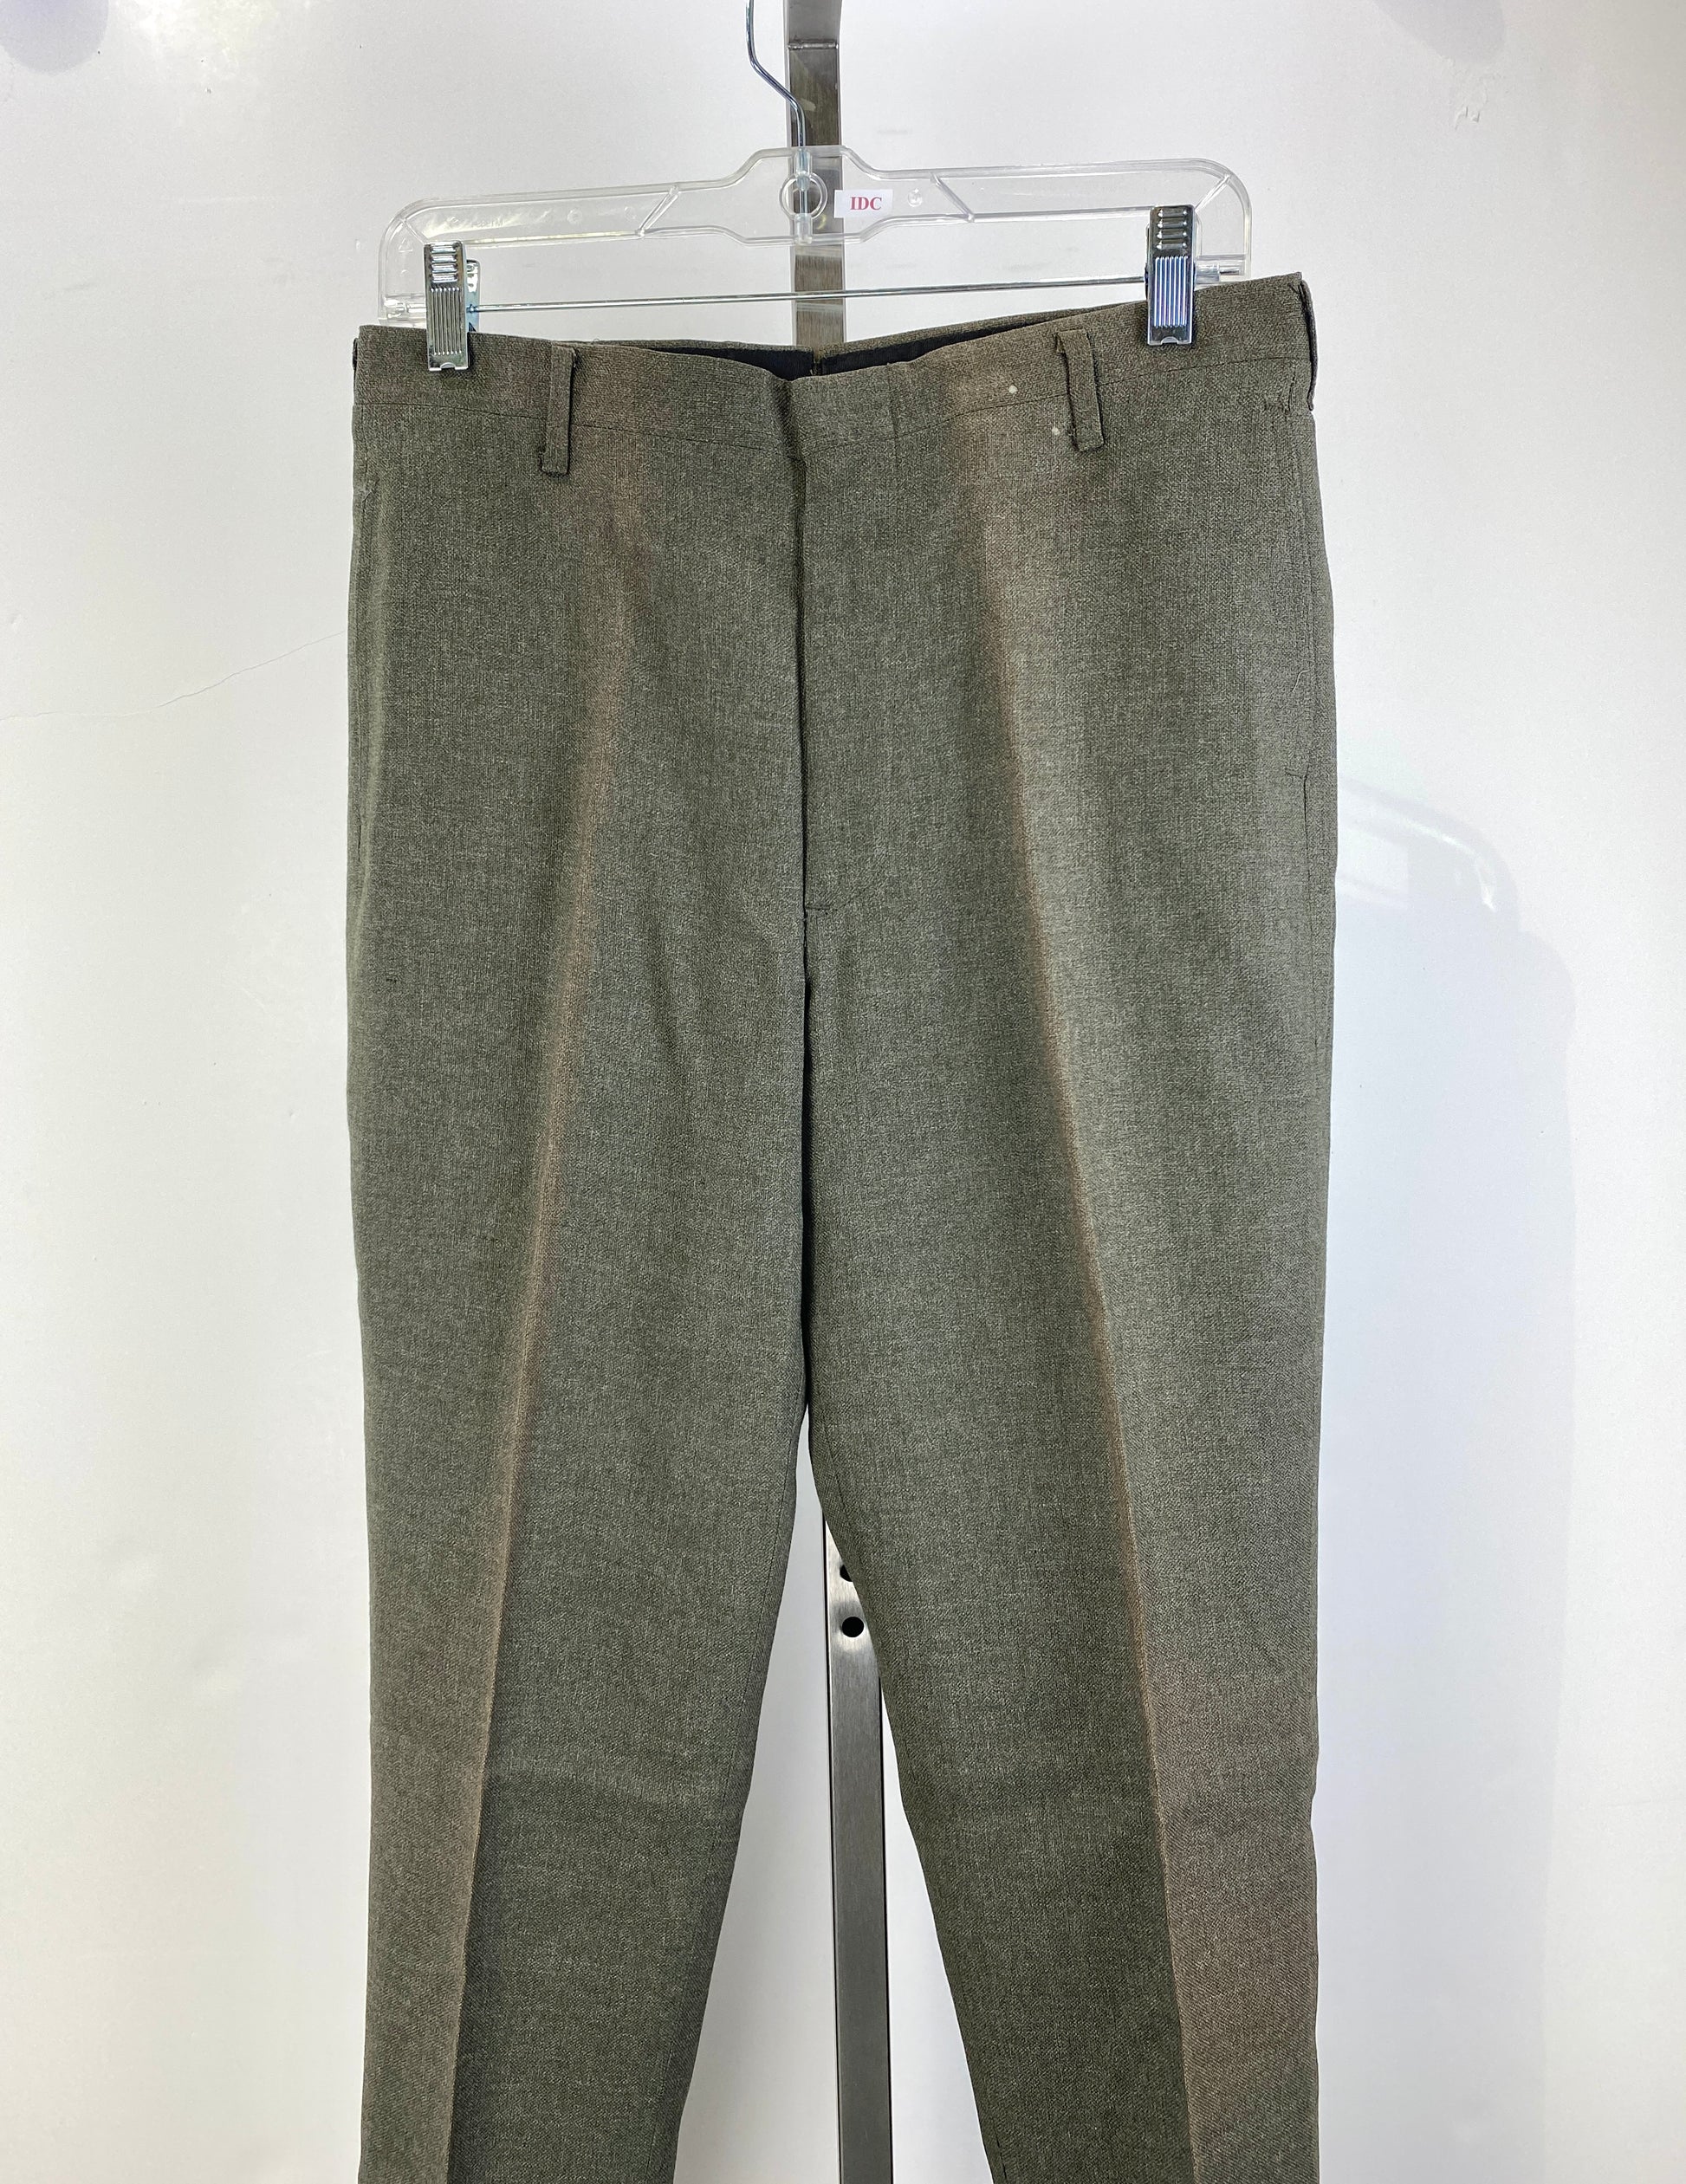 Vintage 1960s Deadstock Trousers, Men's Brown Straight-Leg Slacks, NOS